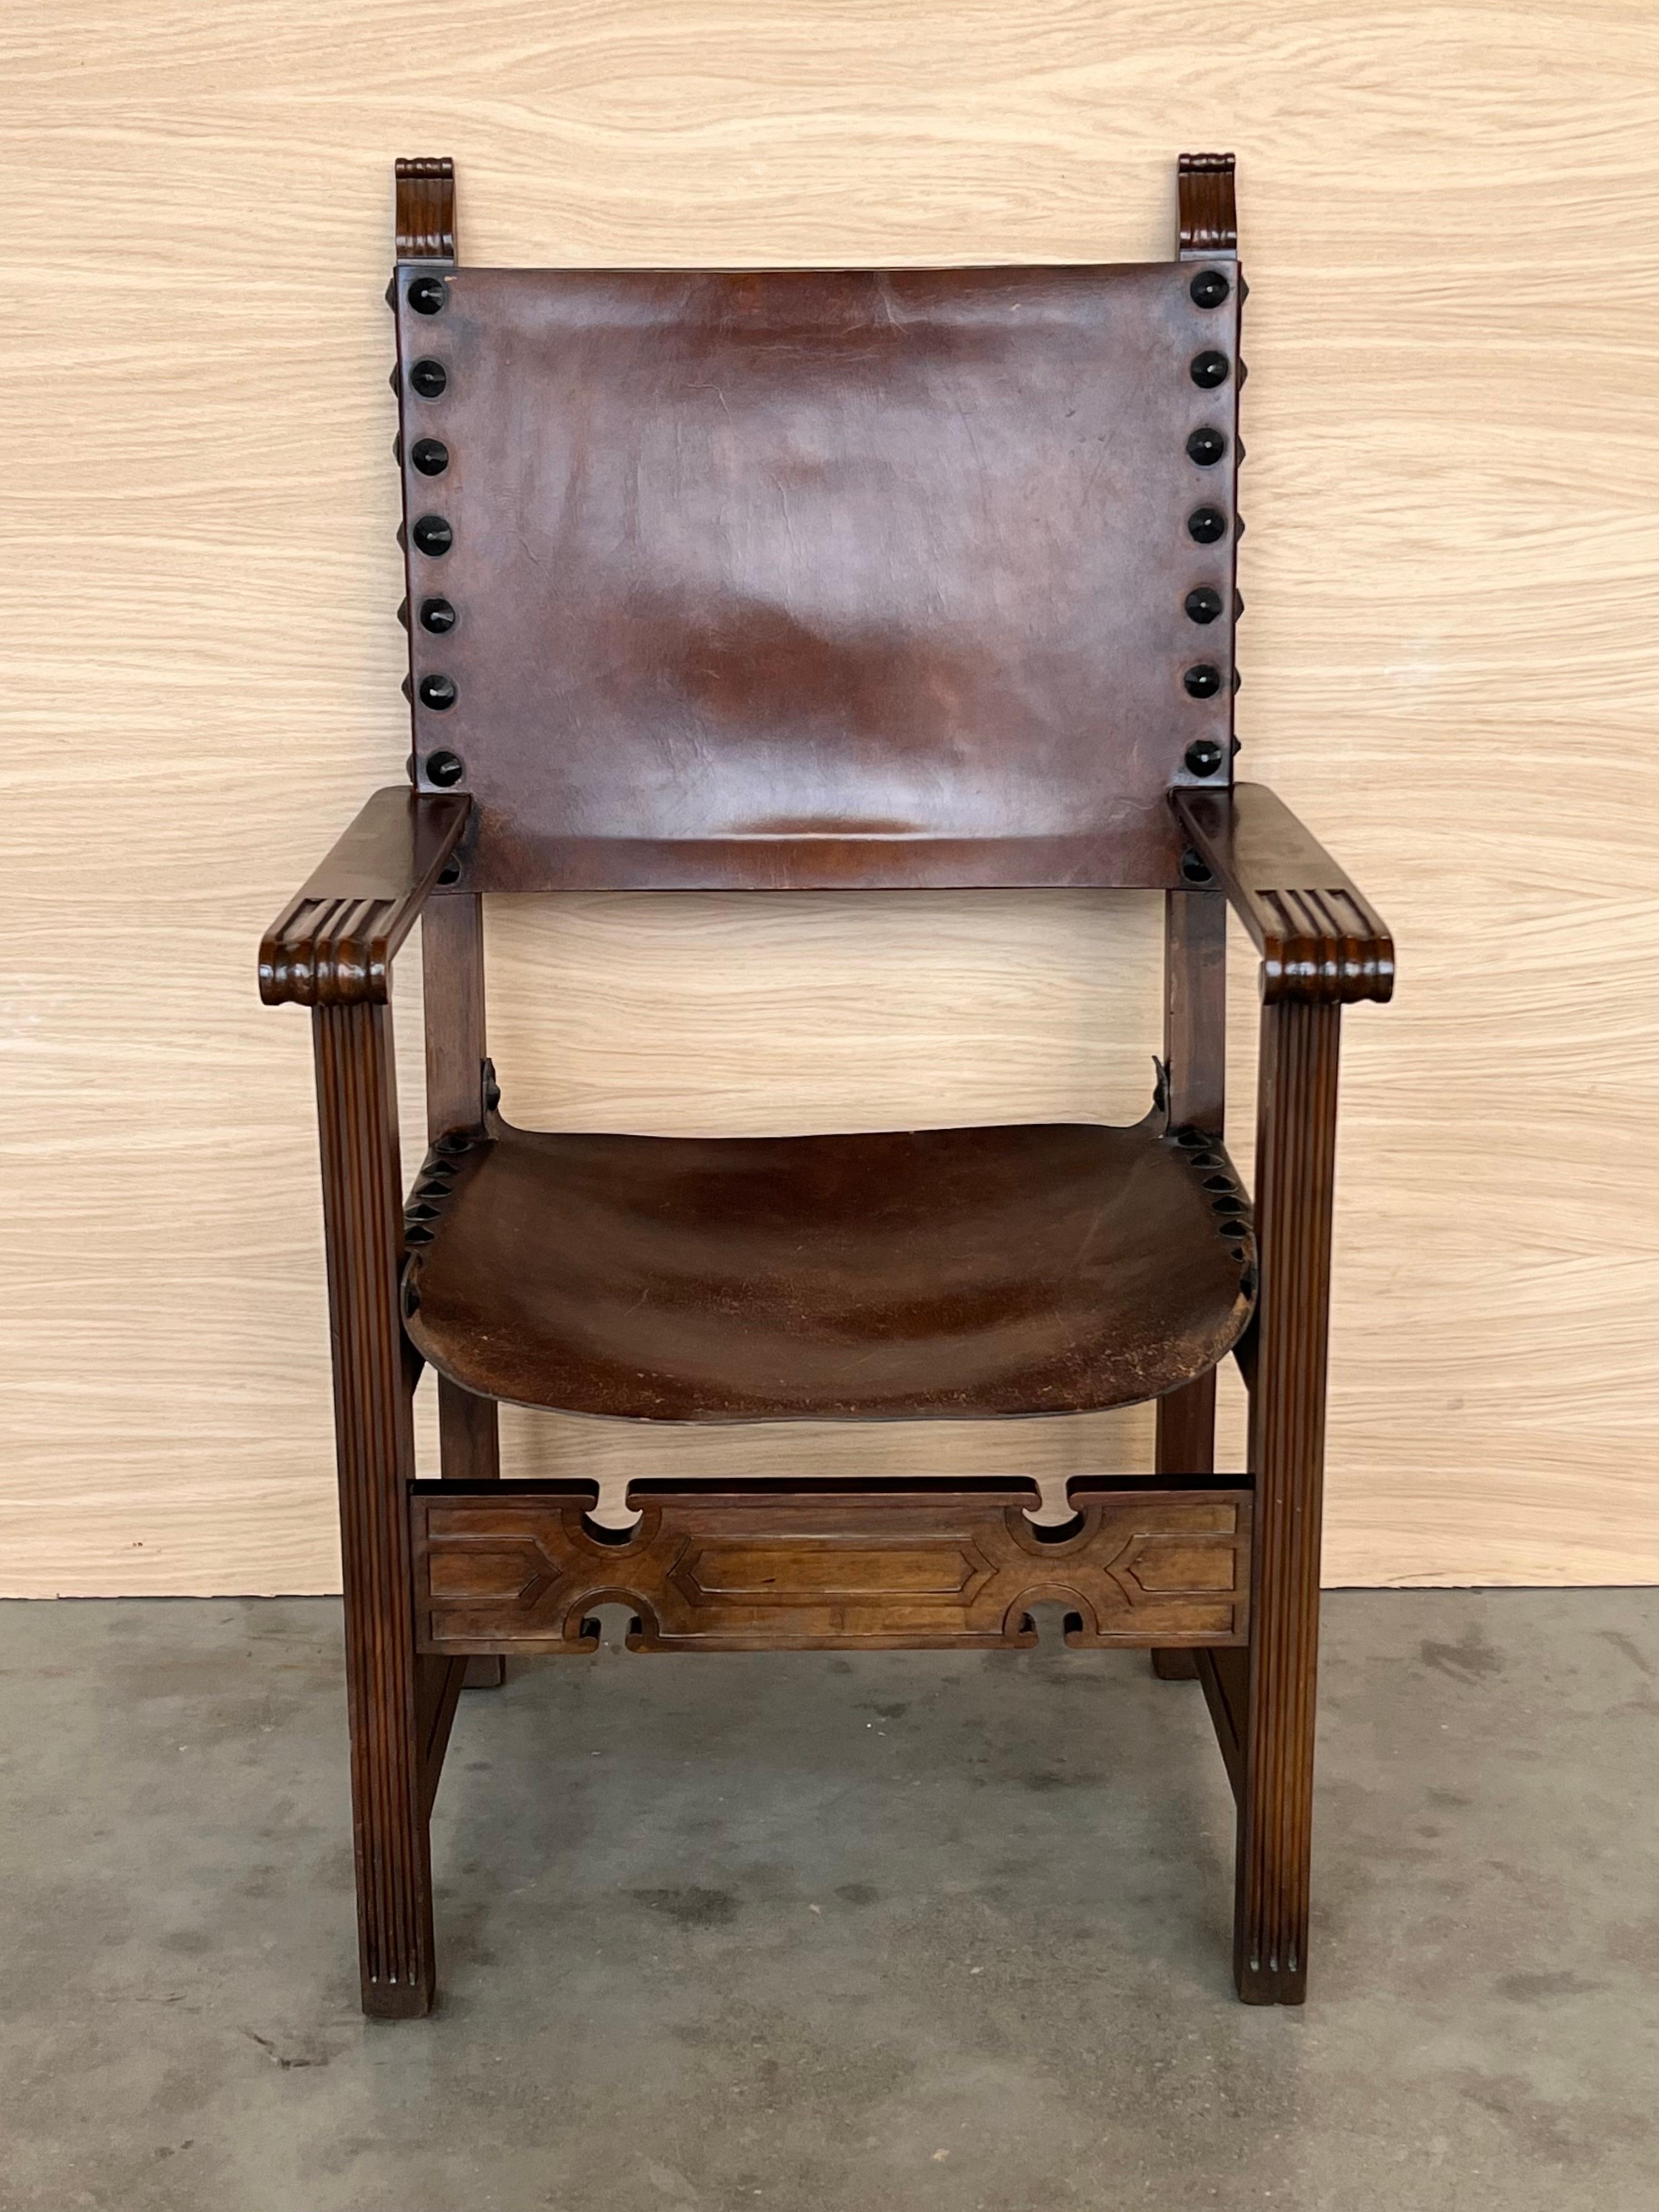 19. Jahrhundert Spanisch kolonialen Altar Sessel mit Holz Sitz mit ornamentalen geschnitzt auf der Rückseite und schöne Beine und Sessel. Es gibt einen sehr widerstandsfähigen und schweren Sessel.

Maße: Höhe bis Arme  66.5cm